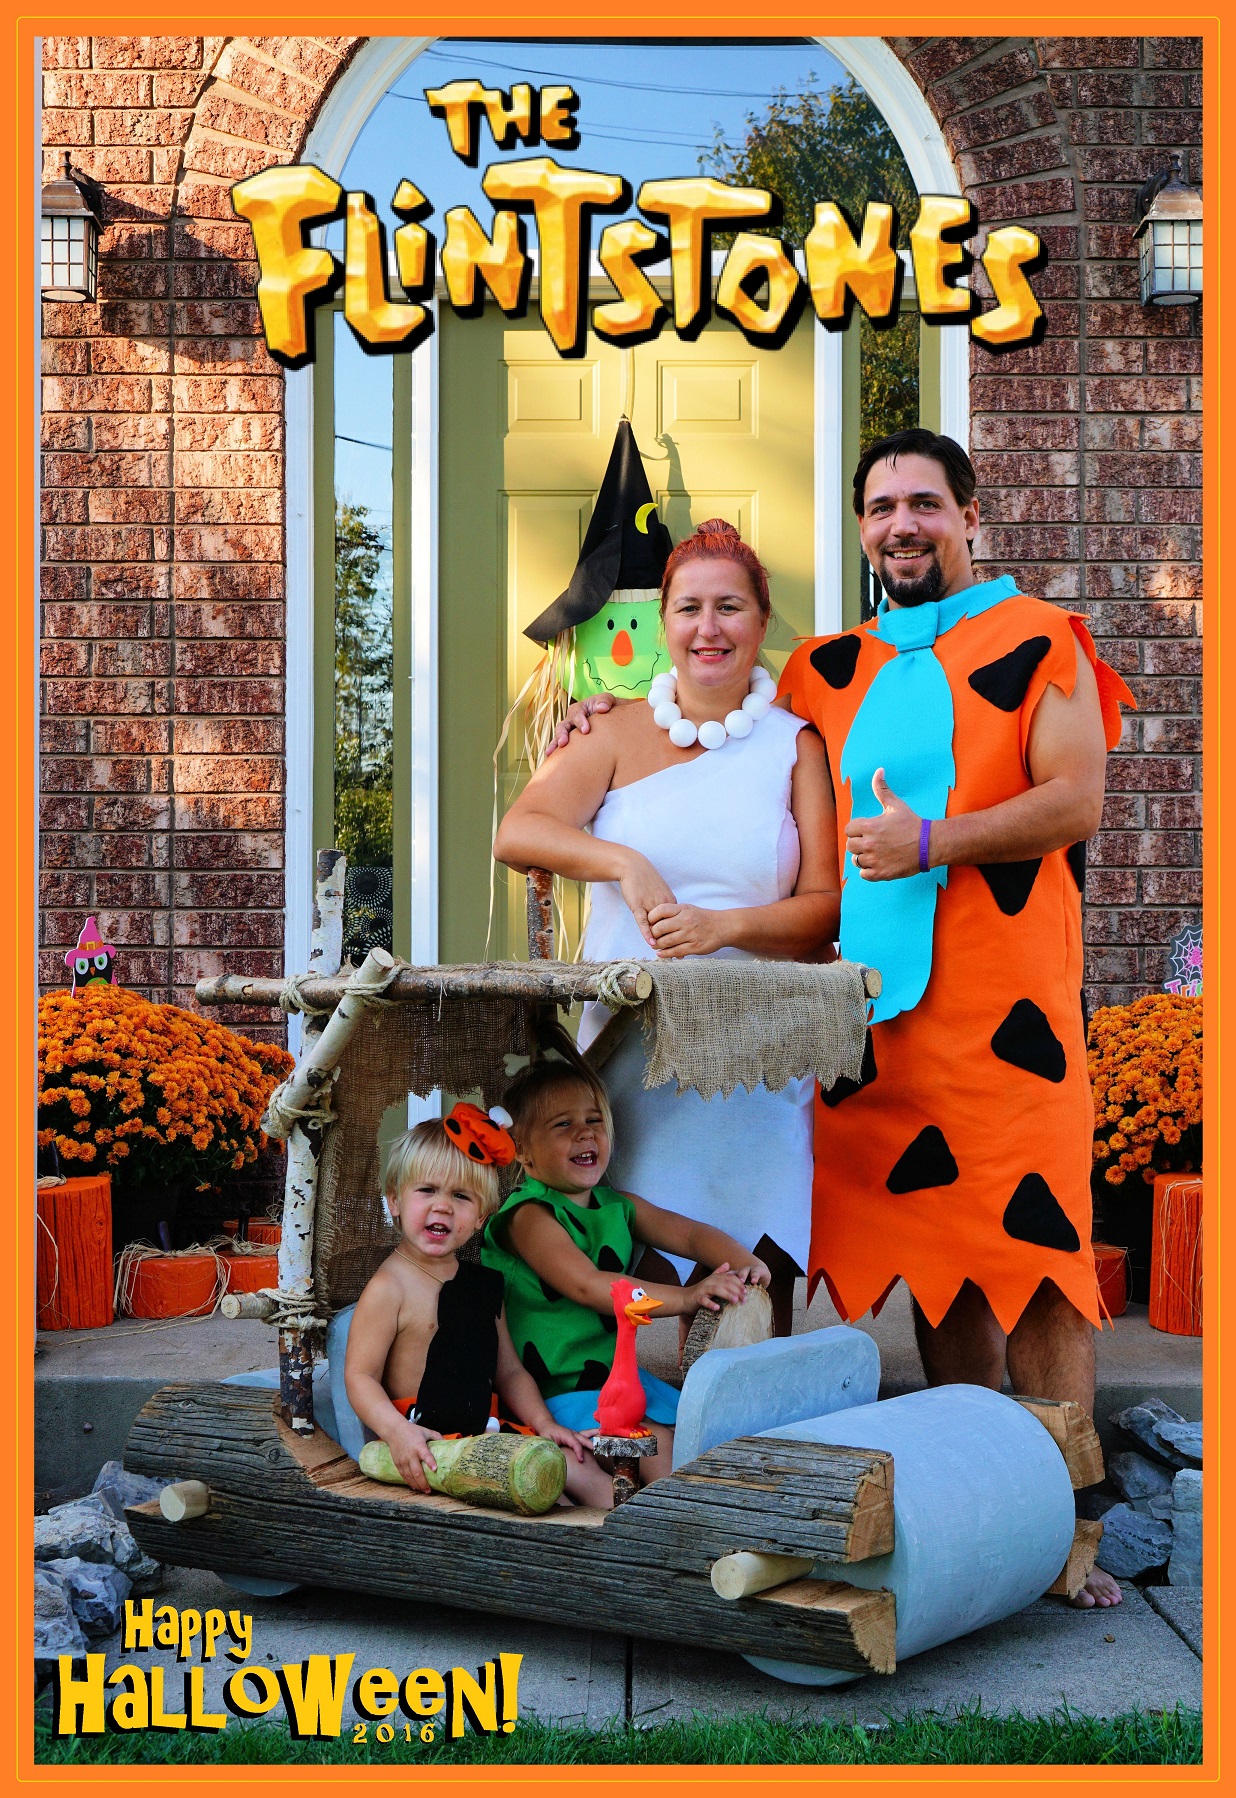 Flintstones Family Halloween Costume with Hand Built Car!